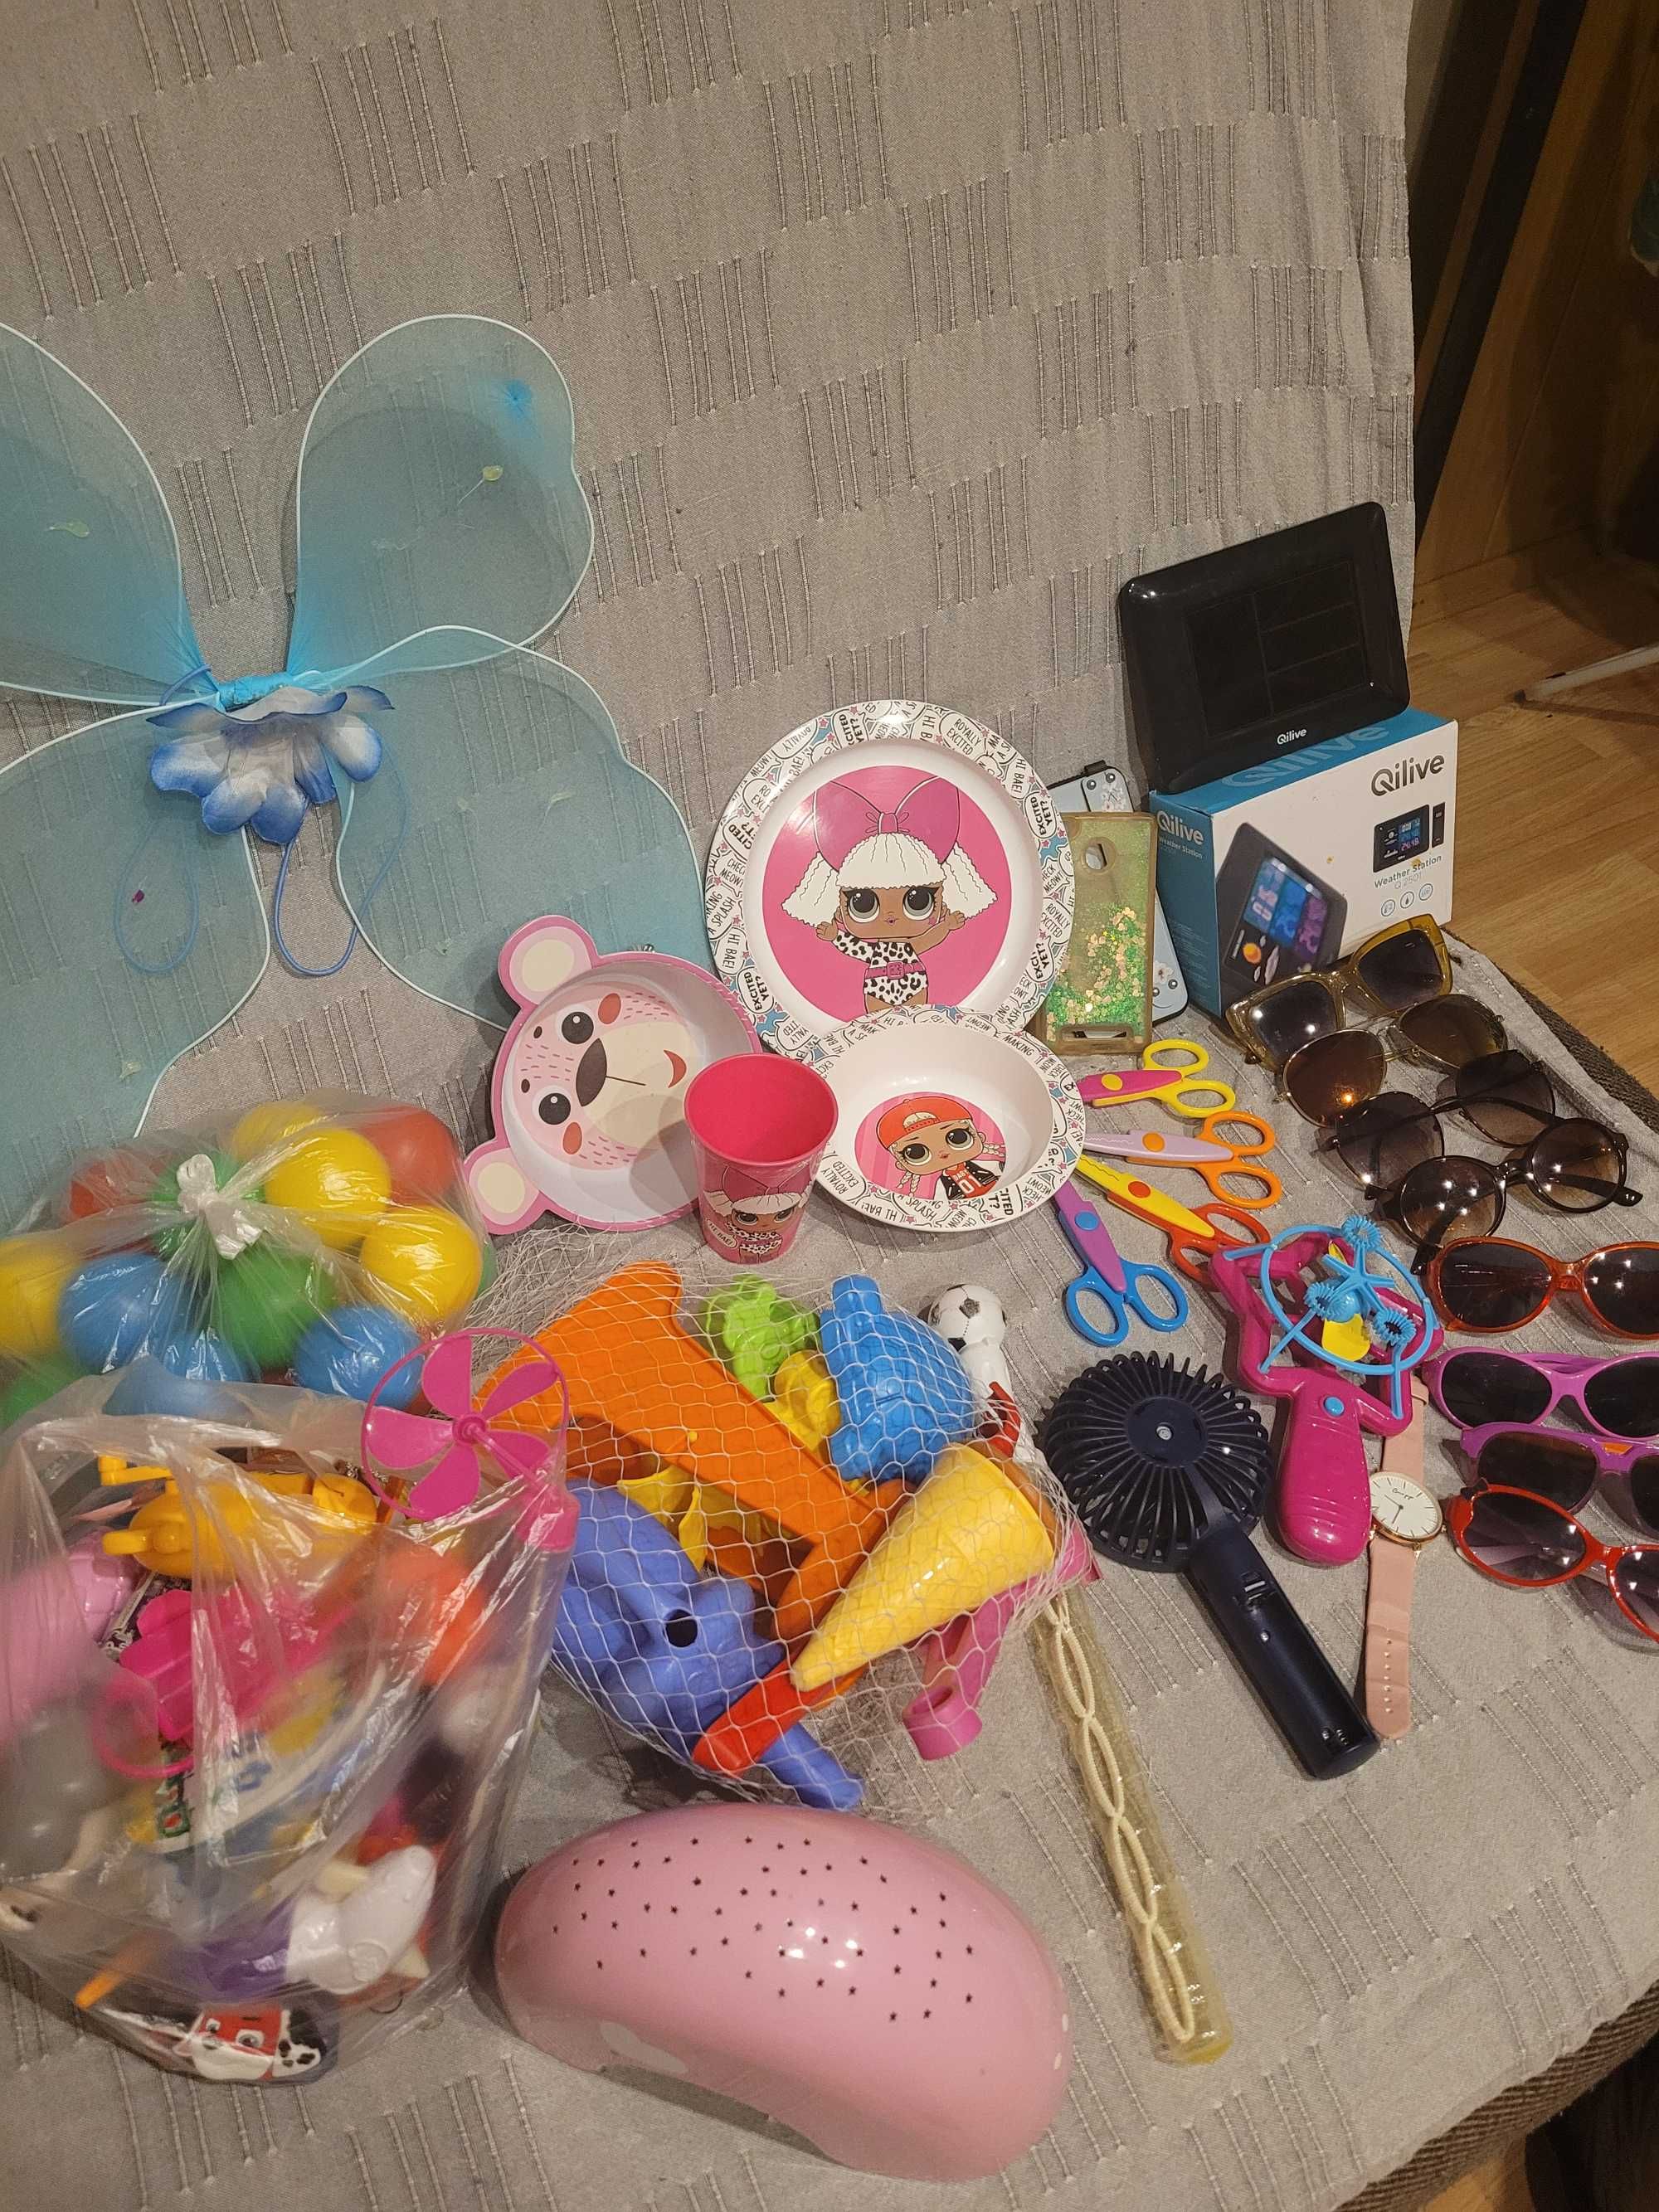 Zabawki,okulary,talerze,zegar